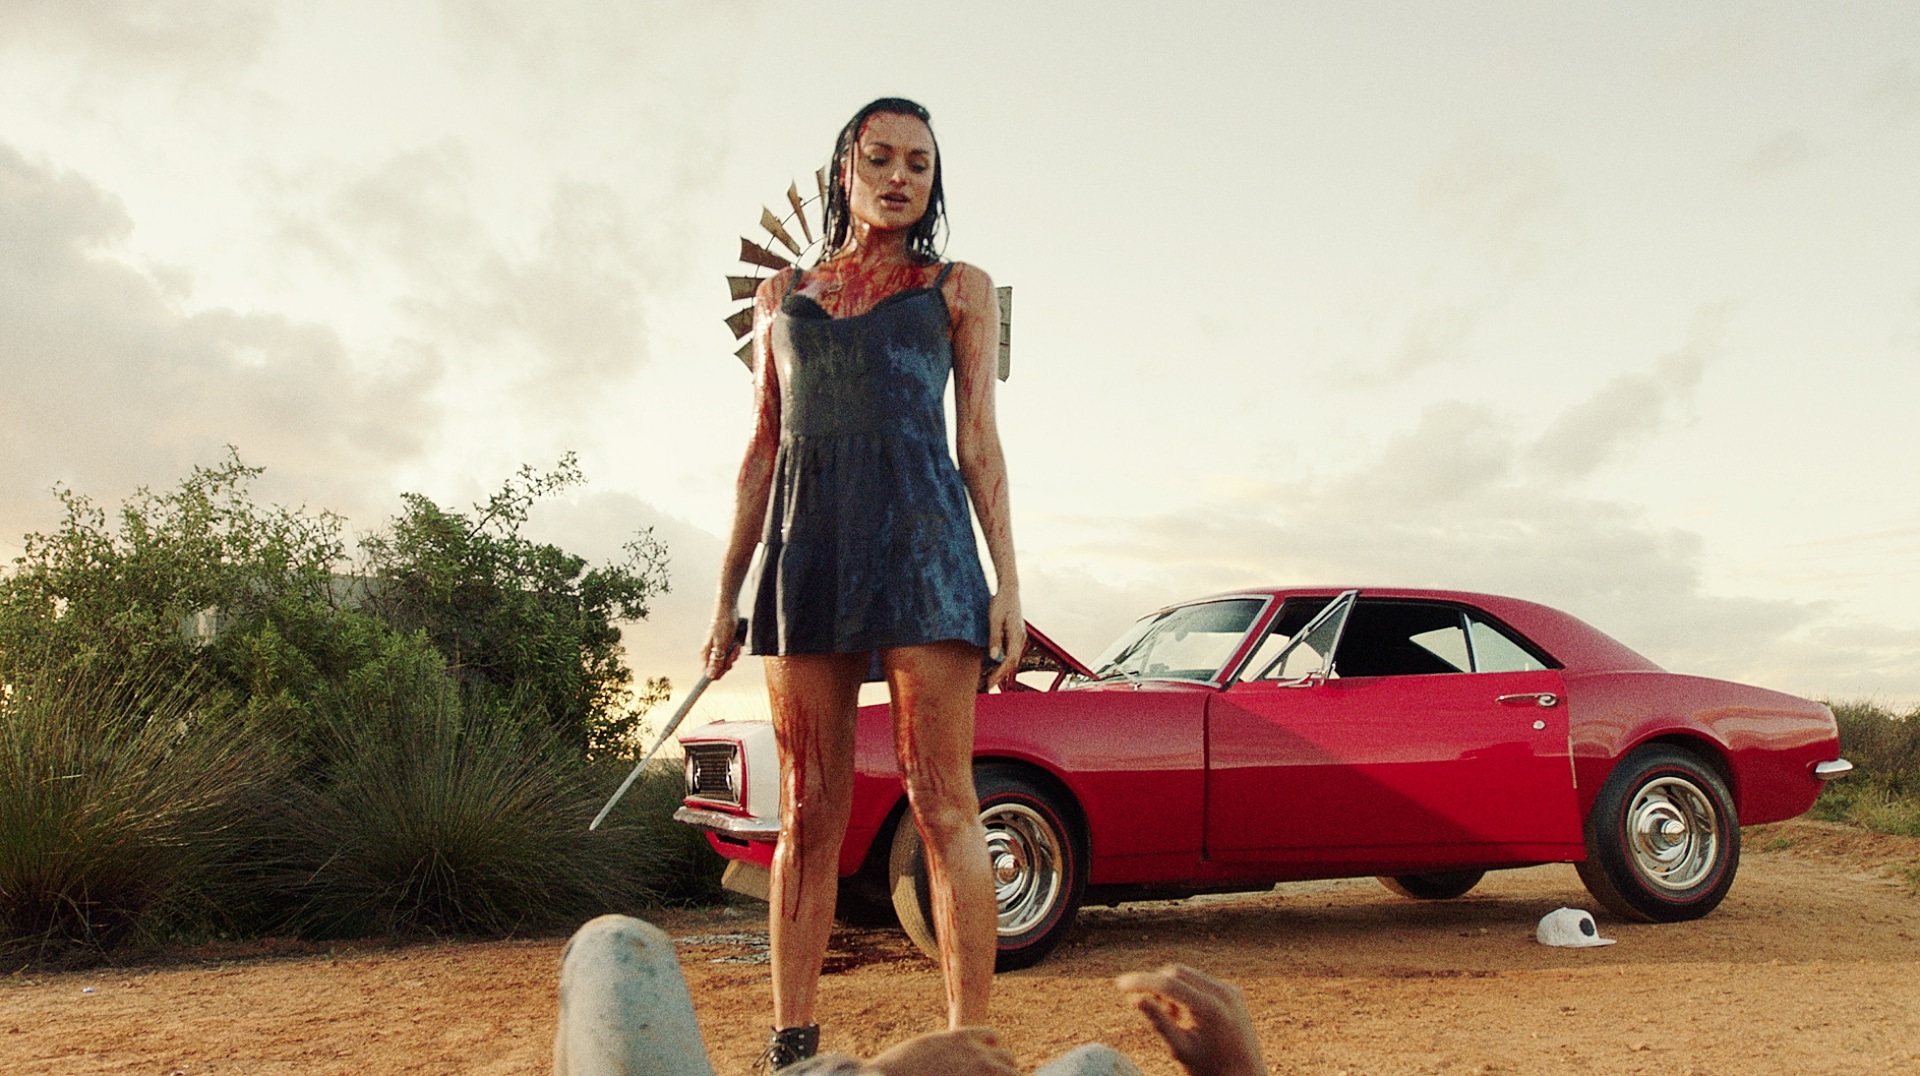 Christina Ochoa als Grace steht in "Blood Drive" blutbespritzt und in einem blauen Kleid über der Leiche eines Mannes. Sie hält einen spitzen Metallstab in der Hand und im Hintergrund ist ihr rotes Auto zu sehen.